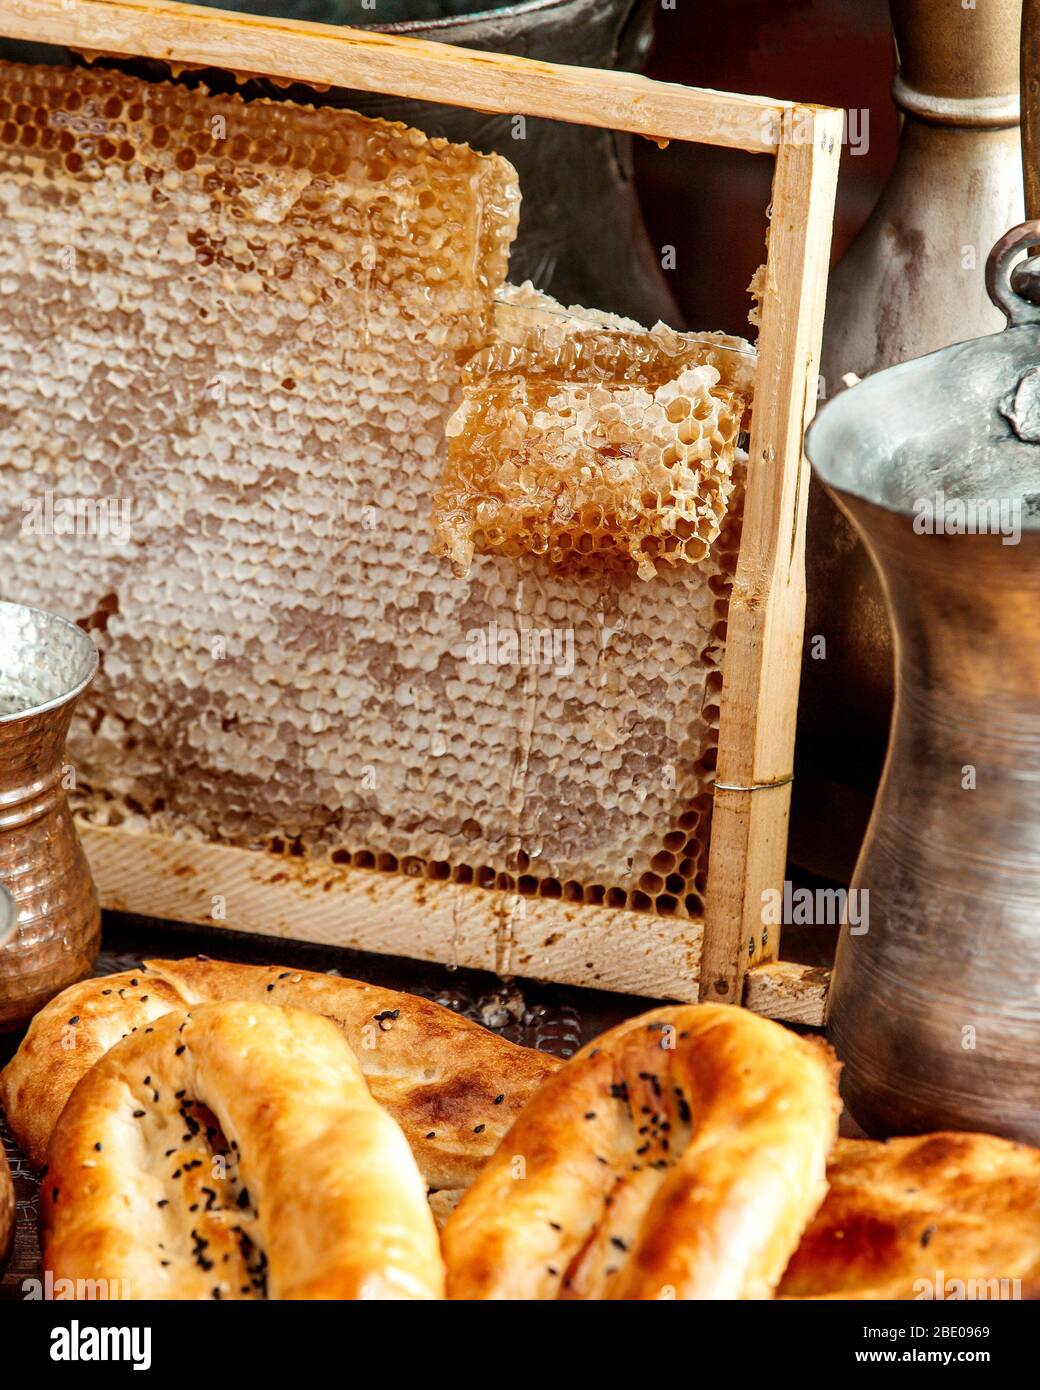 sabots de miel avec pains Banque D'Images